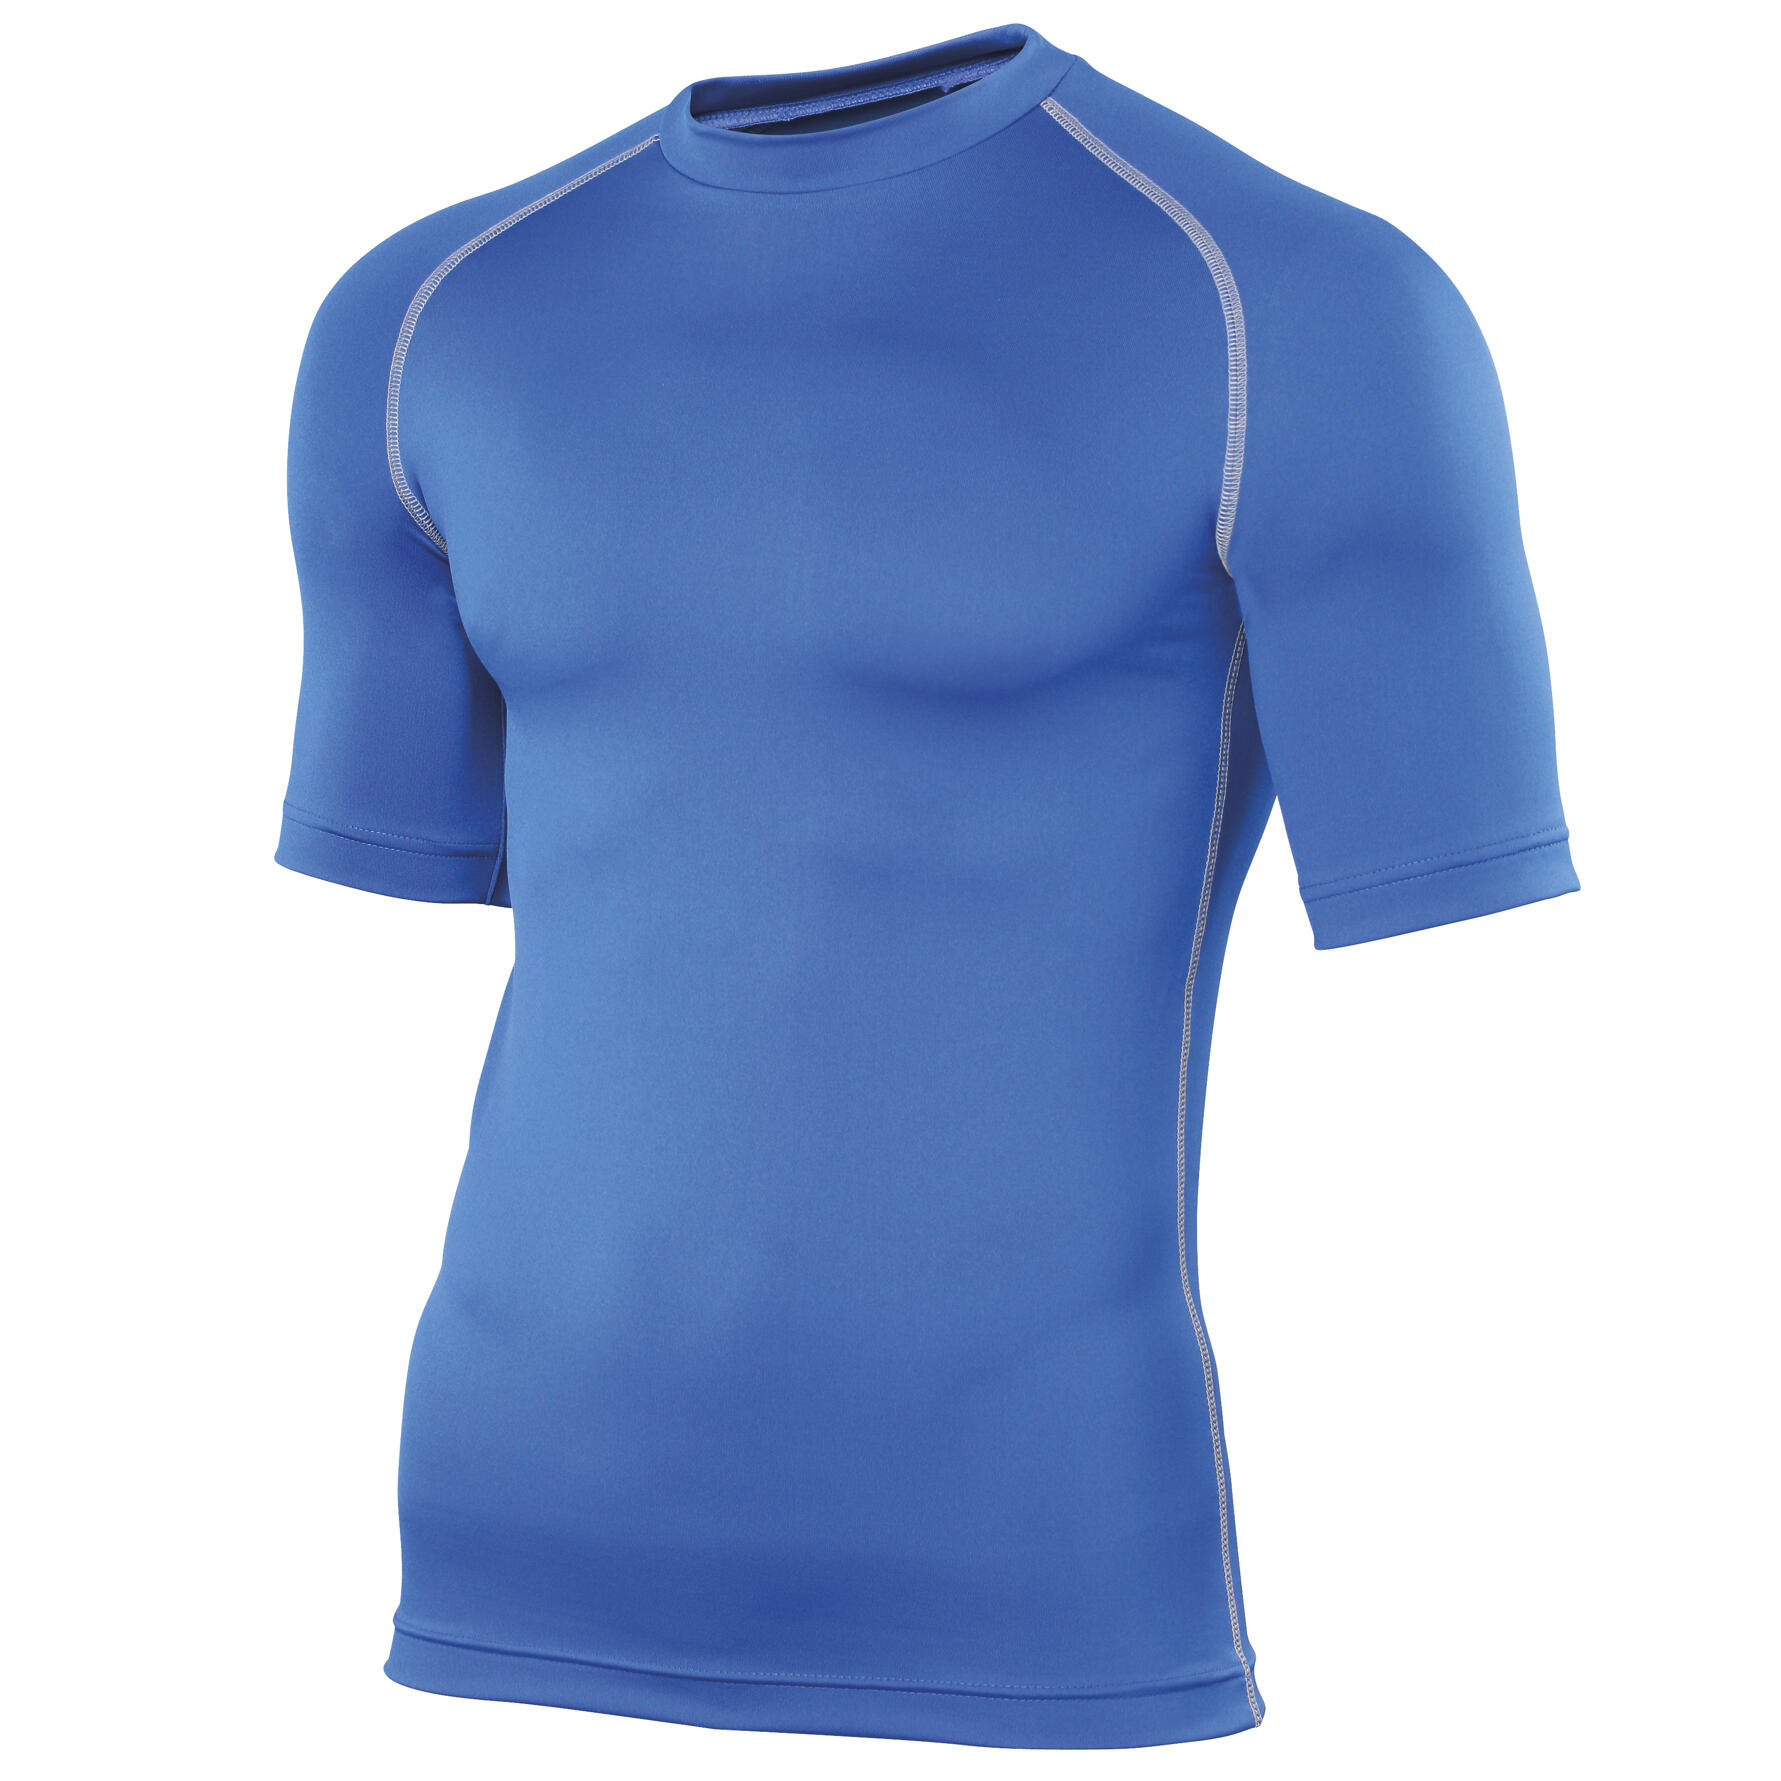 RHINO Mens Sports Base Layer Short Sleeve TShirt (Royal)